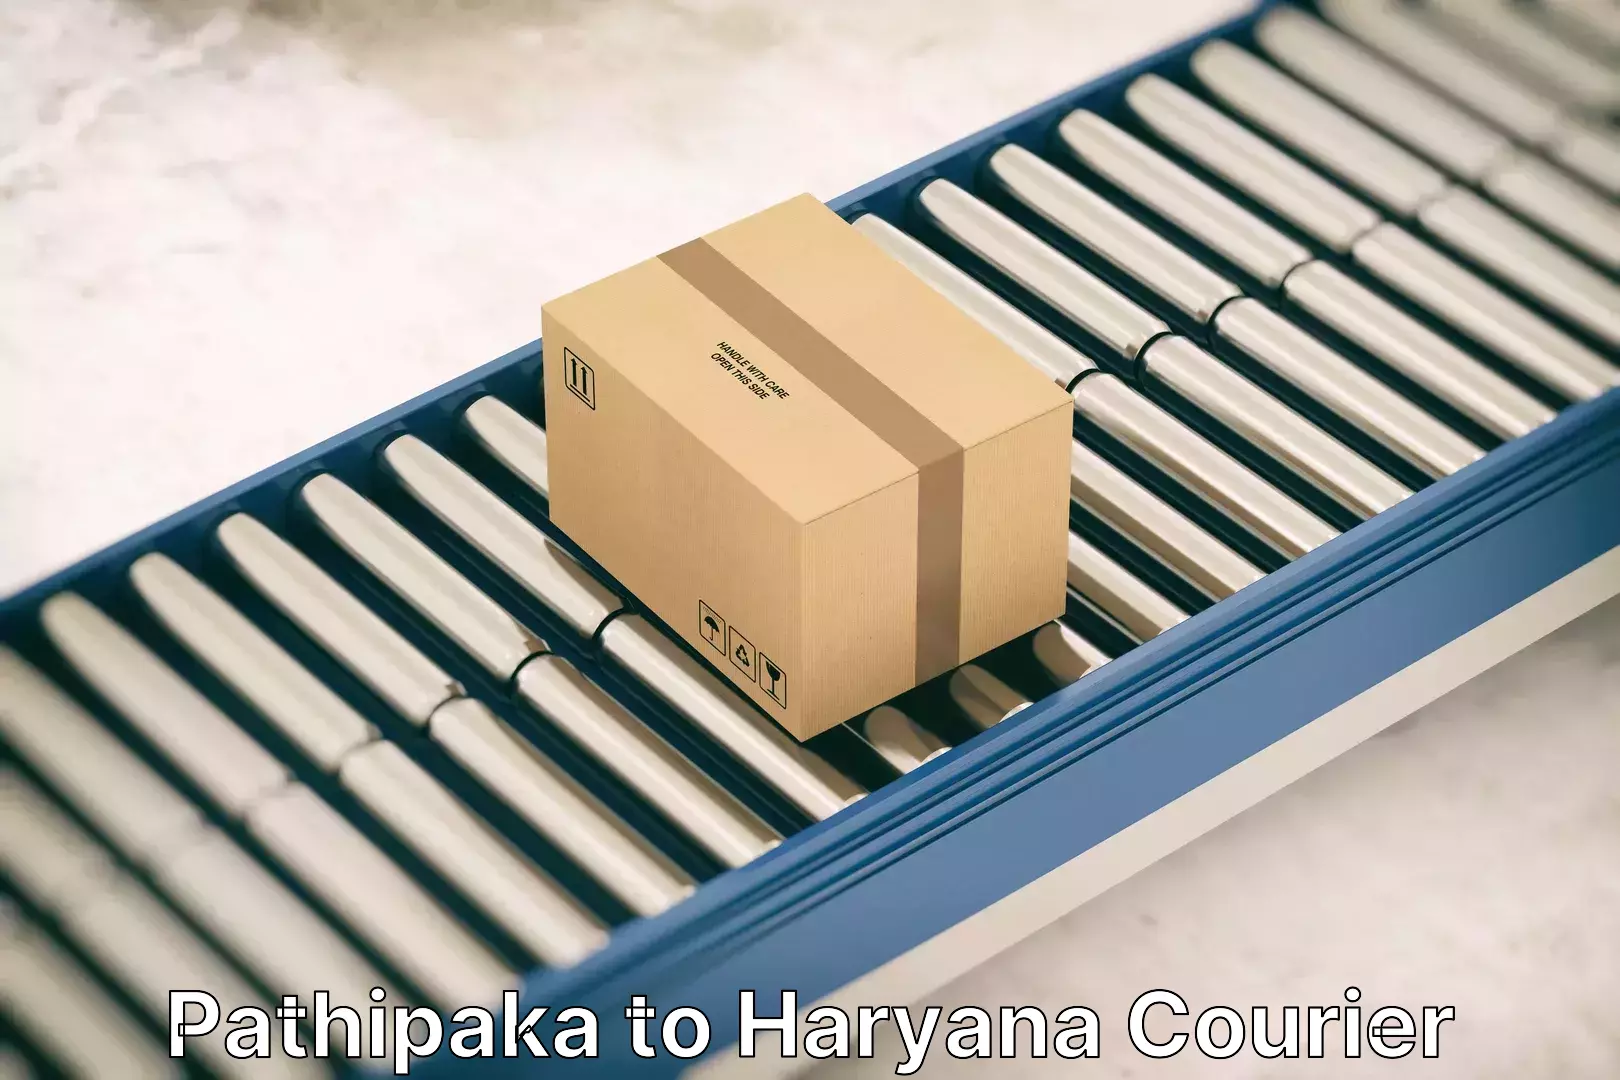 Professional moving company Pathipaka to Haryana